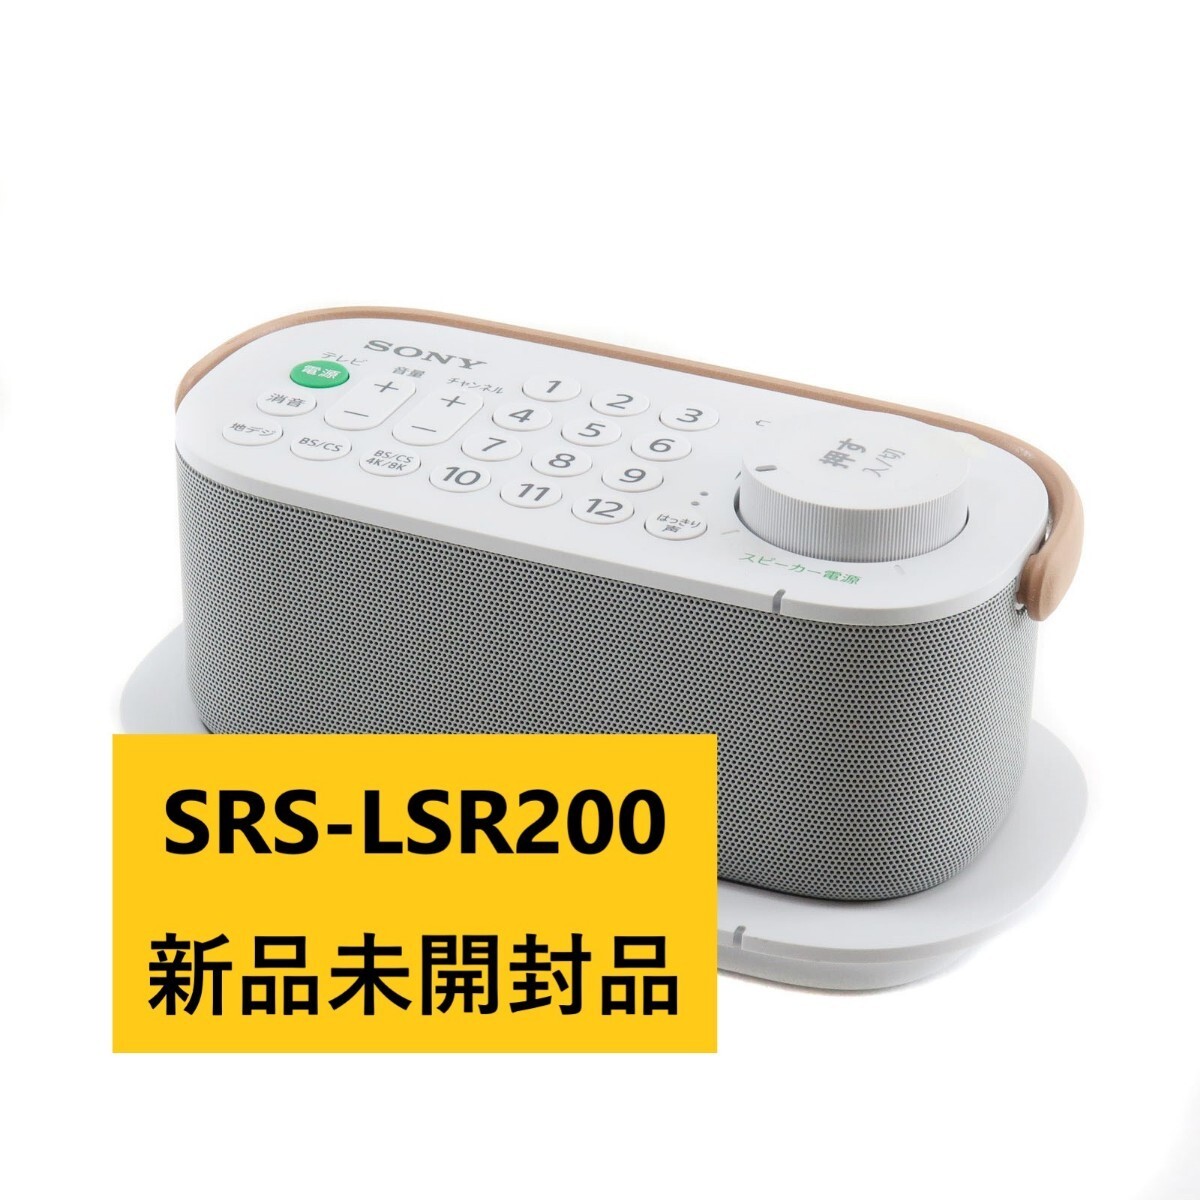 新品未開封品 ソニー お手元テレビスピーカー SRS-LSR200